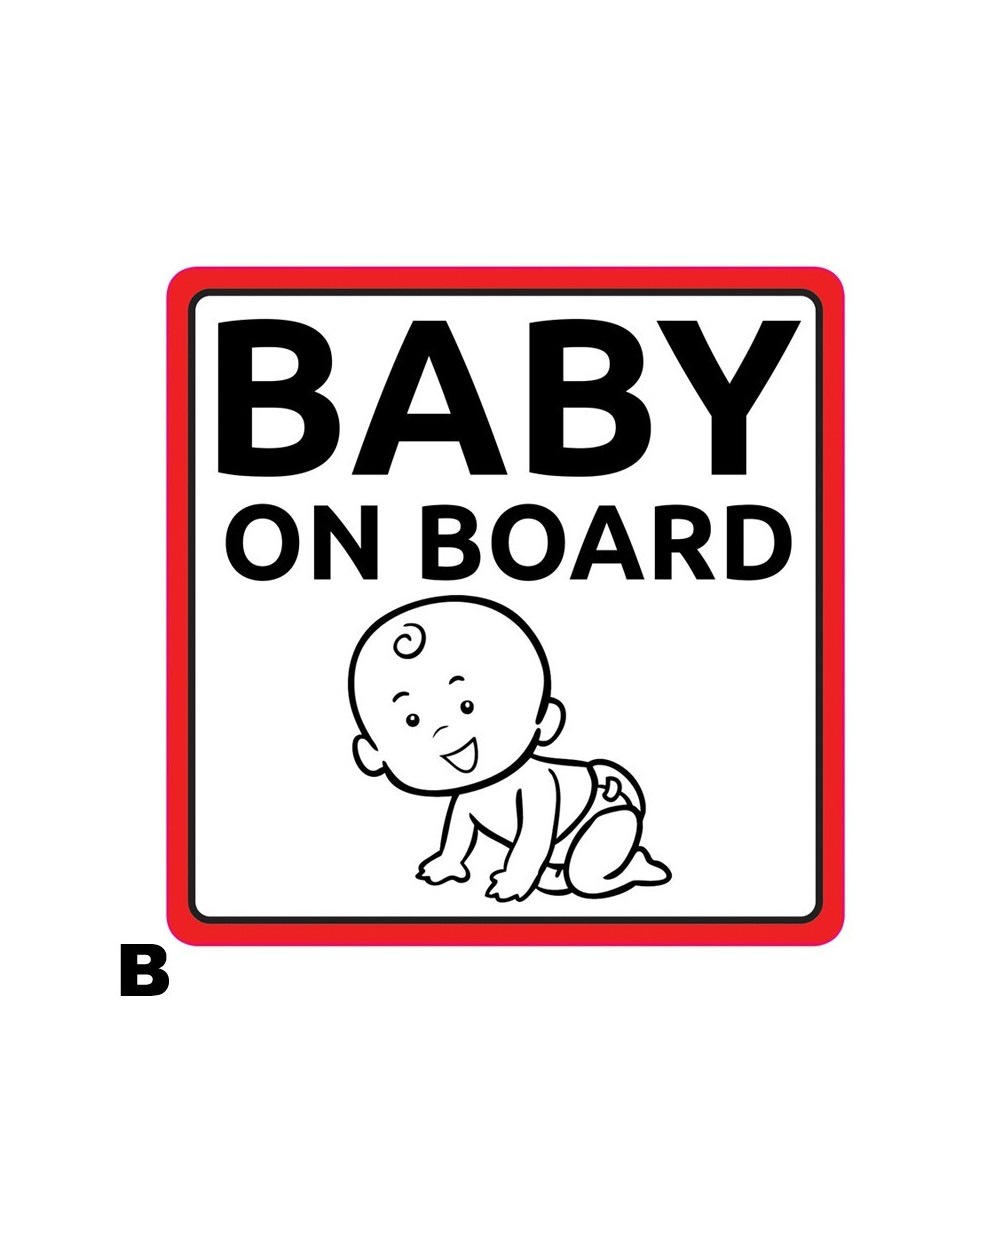 Αυτοκόλλητο Σήμα Μωρό στο Αυτοκίνητο 12.5x12.5cm Autoline 10028 - B